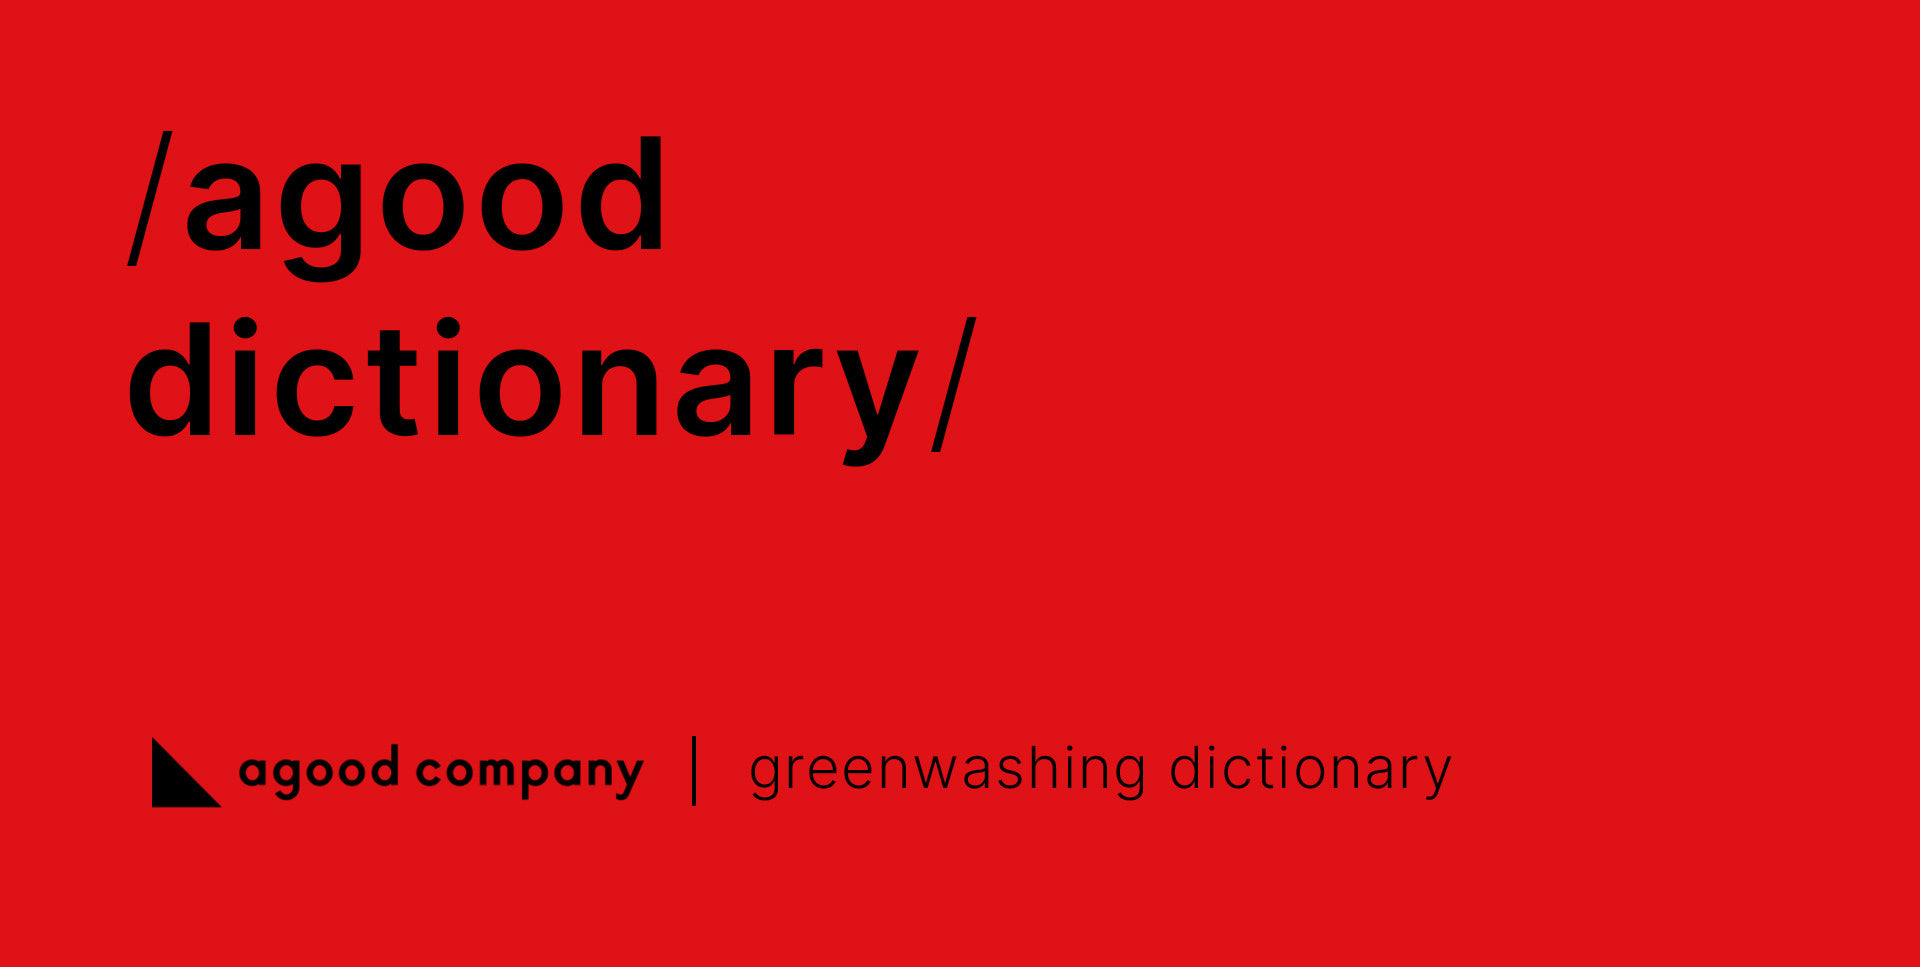 Ein gutes Greenwashing-Wörterbuch für Unternehmen